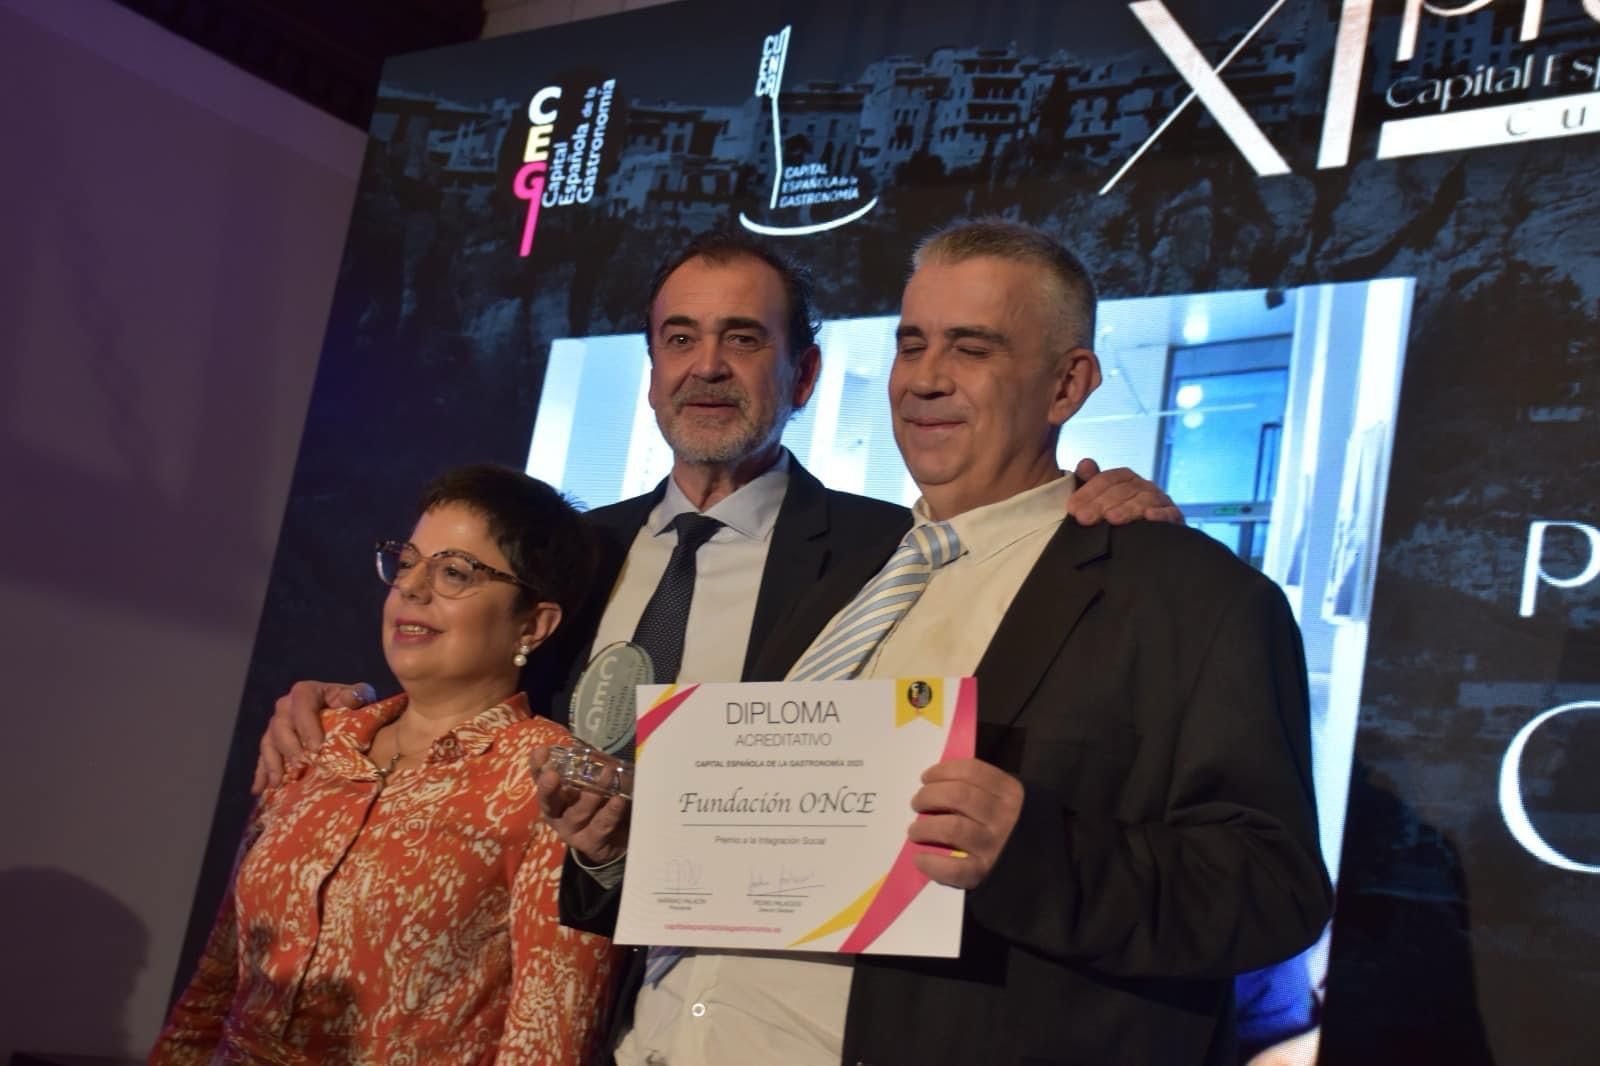 Javier Martínez recogiendo el Premio otorgado por jurado de Capital Gastronomía España